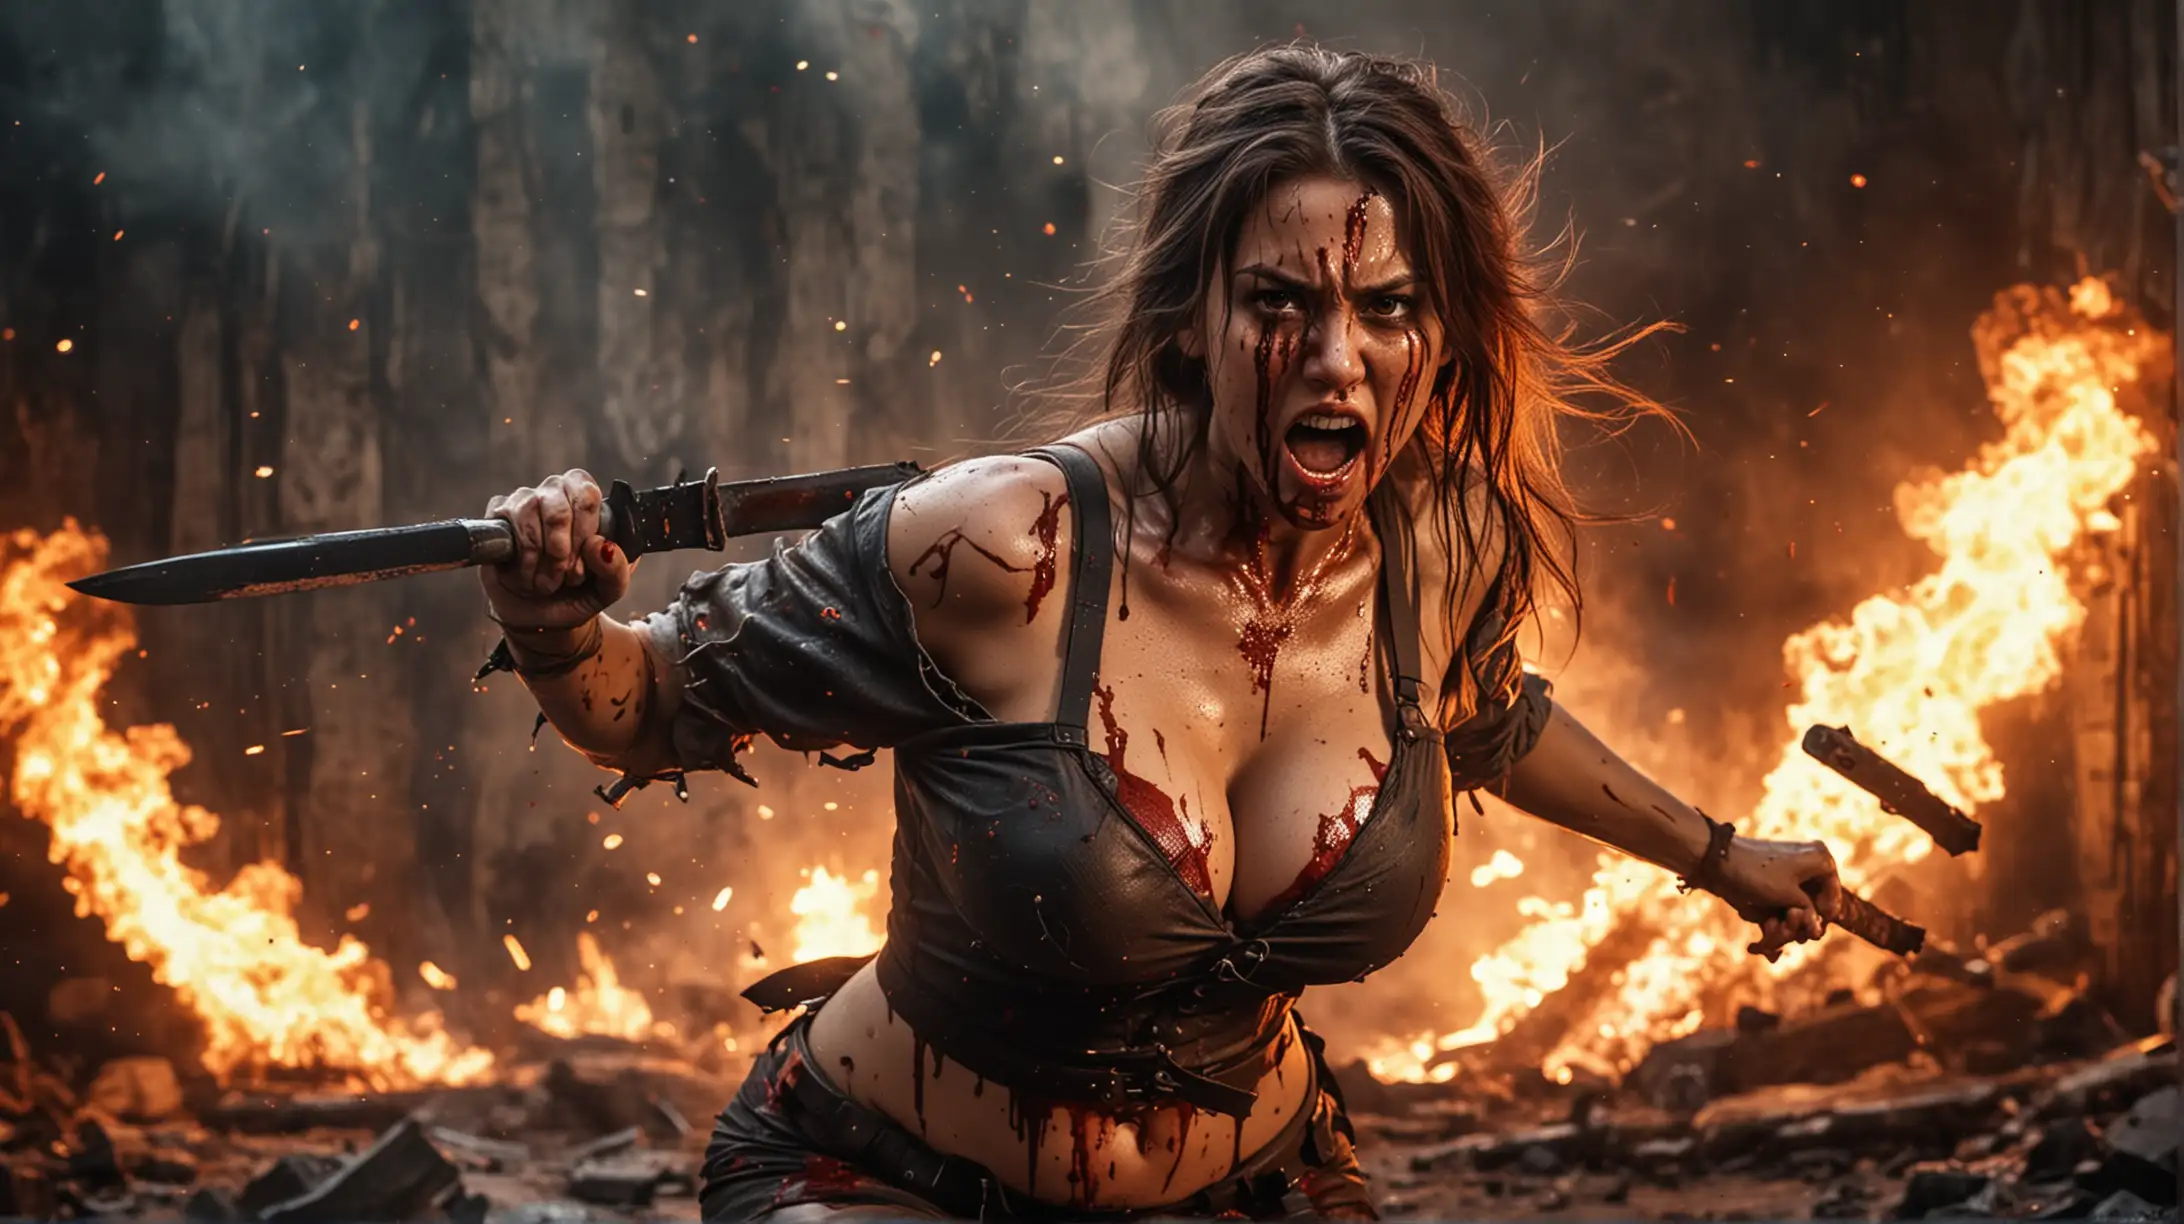 Fierce Warrior Woman Swings Blade in Fiery Battle